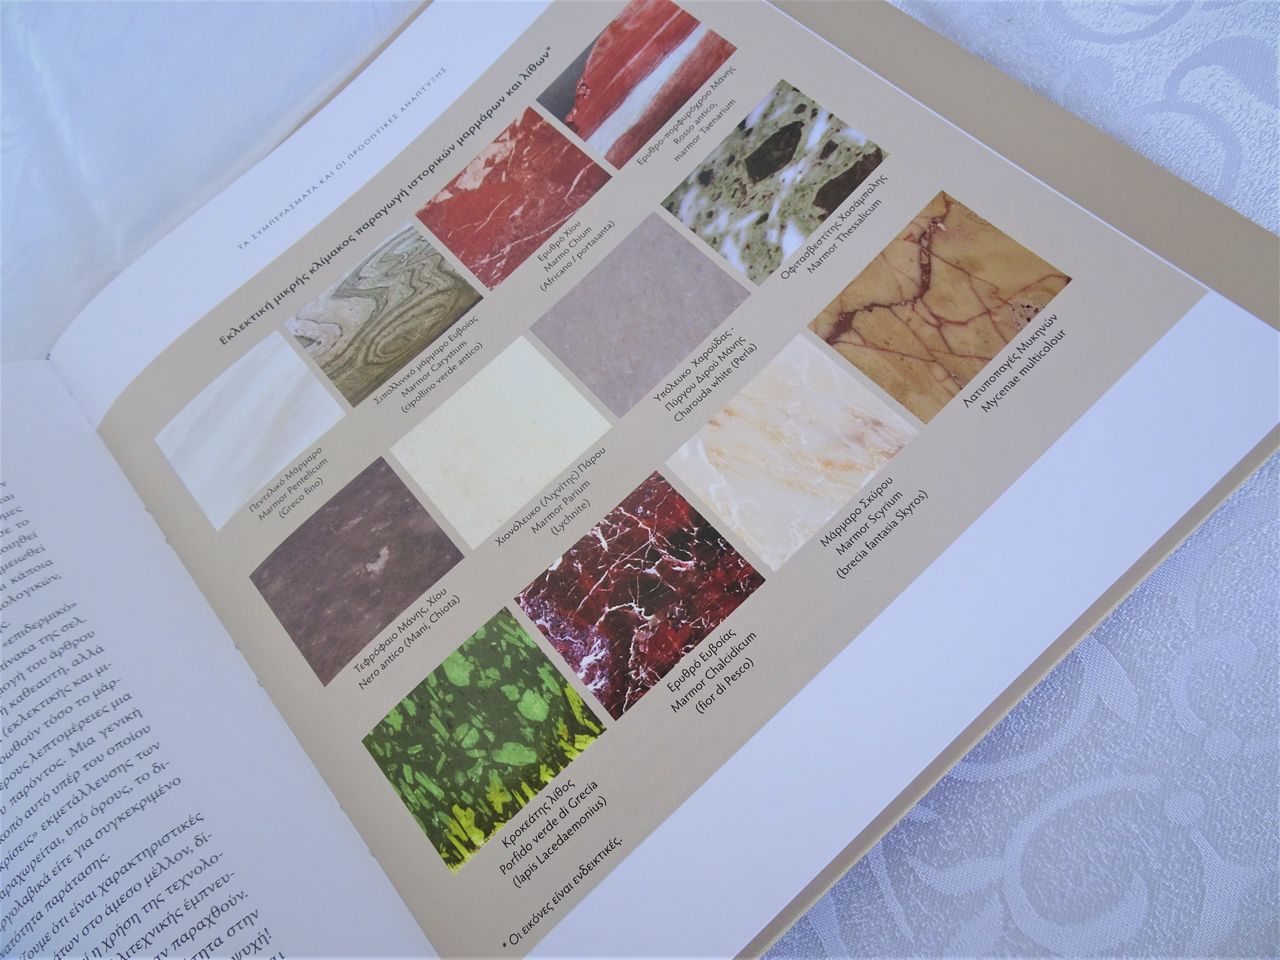 Ένα πολύχρωμο δειγματολόγιο ιστορικών χαρακτηριστικών μαρμάρων και λίθων του Ελληνικού χώρου.